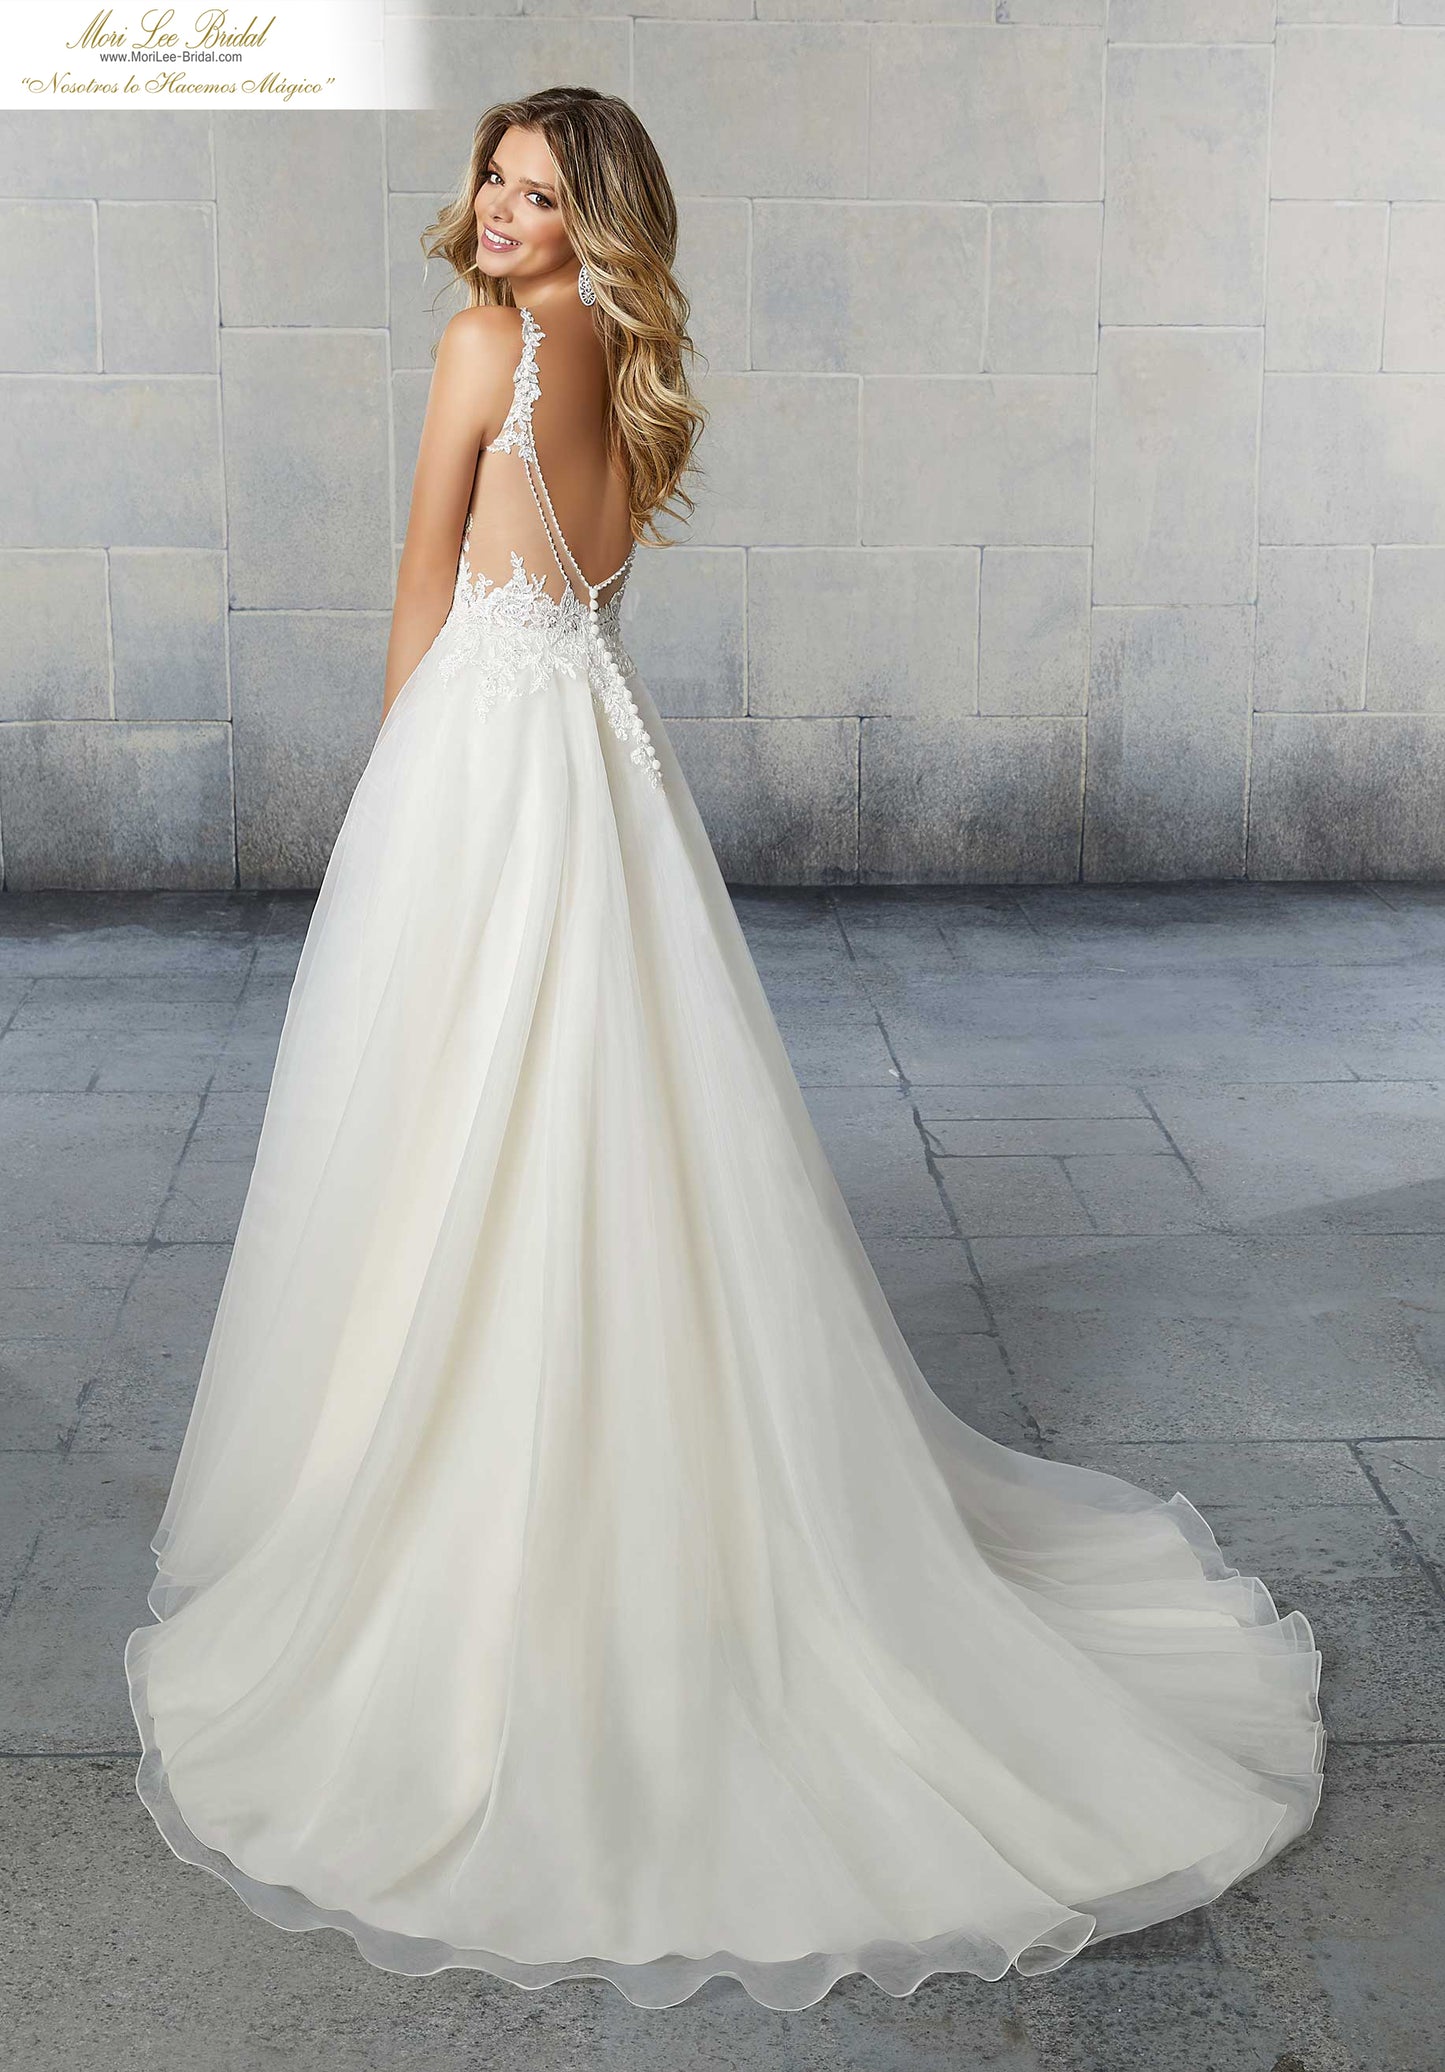 Vestido de novia Sybil presenta bordados con cuentas de cristal y tiras aplicadas en un vestido de organza con transparencia en el escote de la espalda con bordes de cristal.  FYOF*